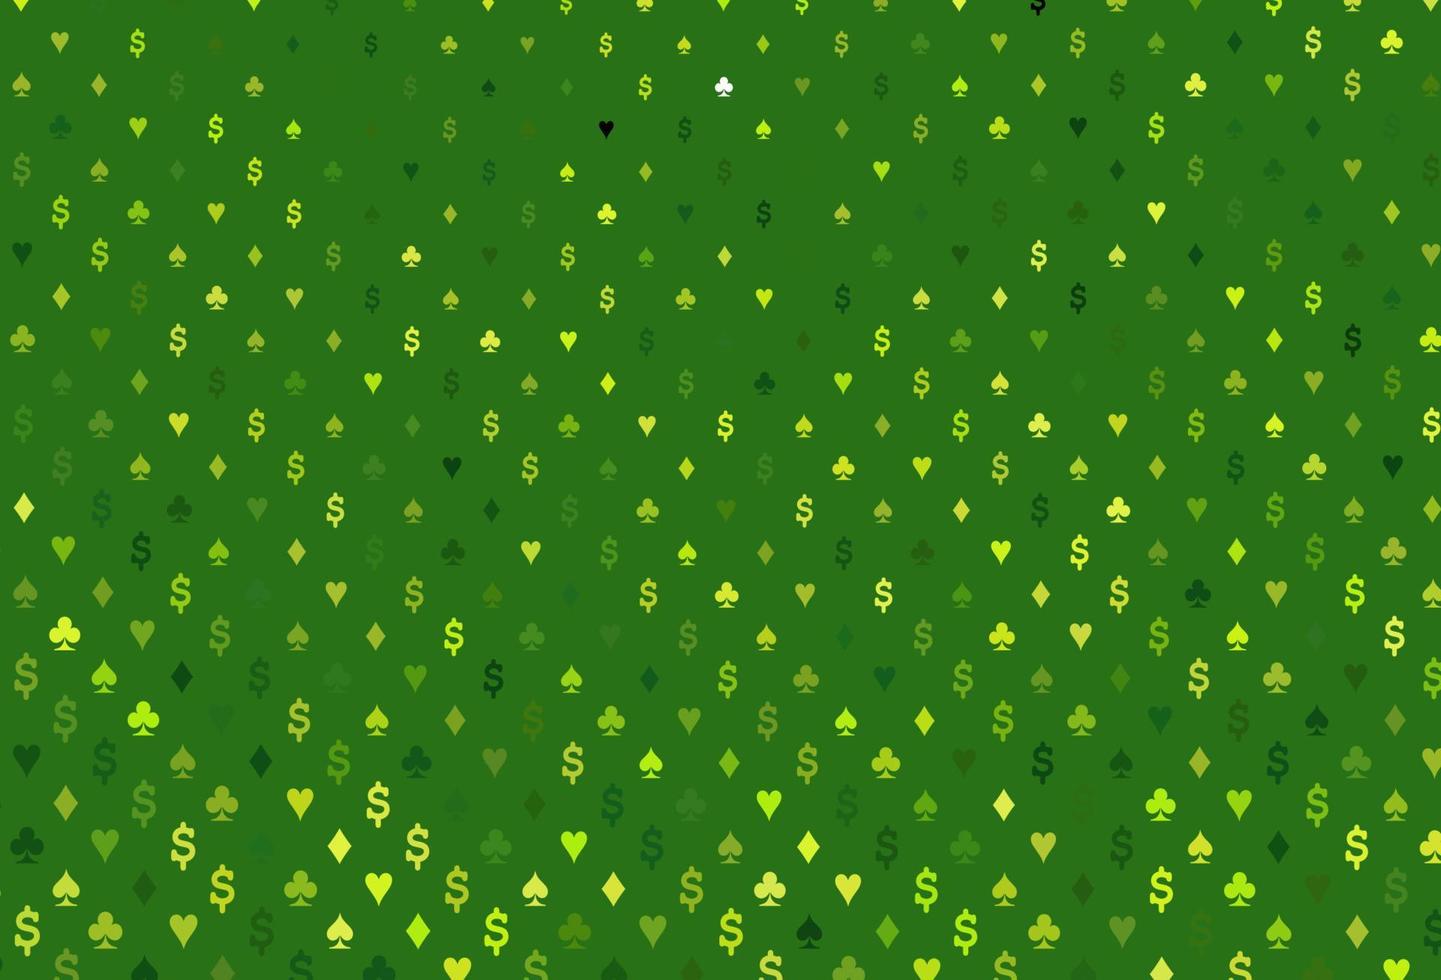 ljusgrön vektor mall med pokersymboler.